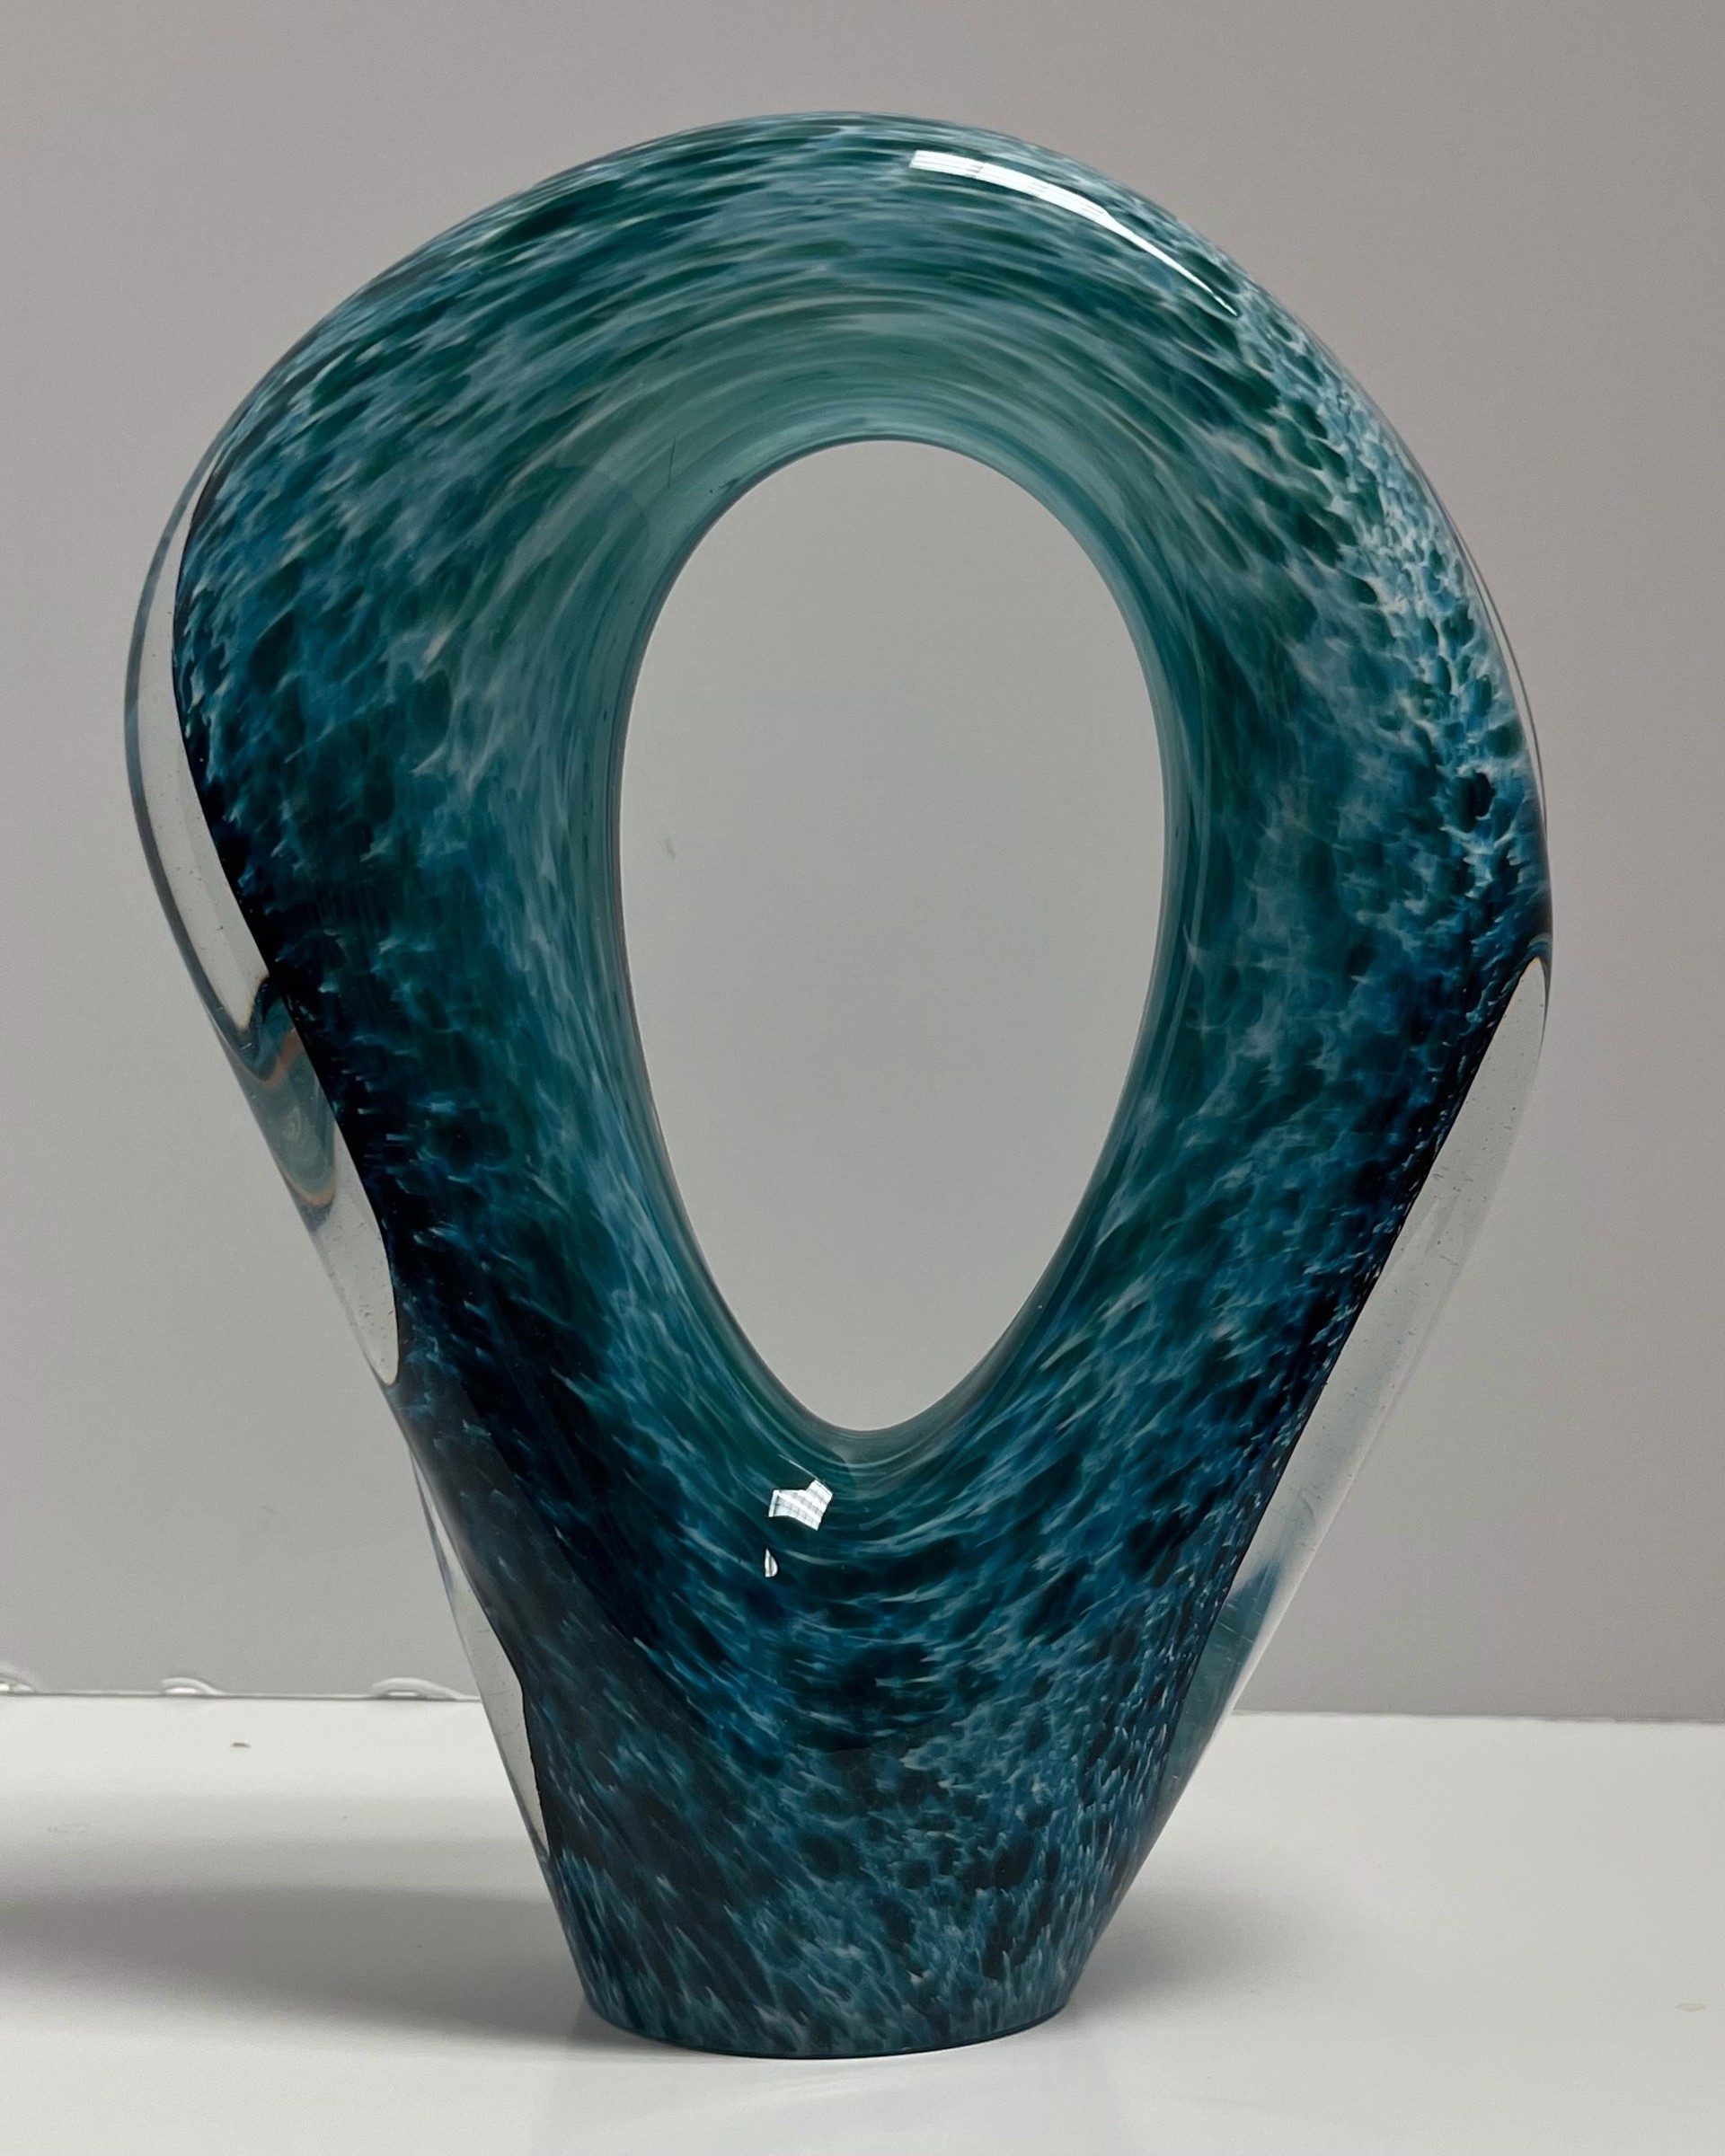 Single Pierced sculpture by Neil Duman